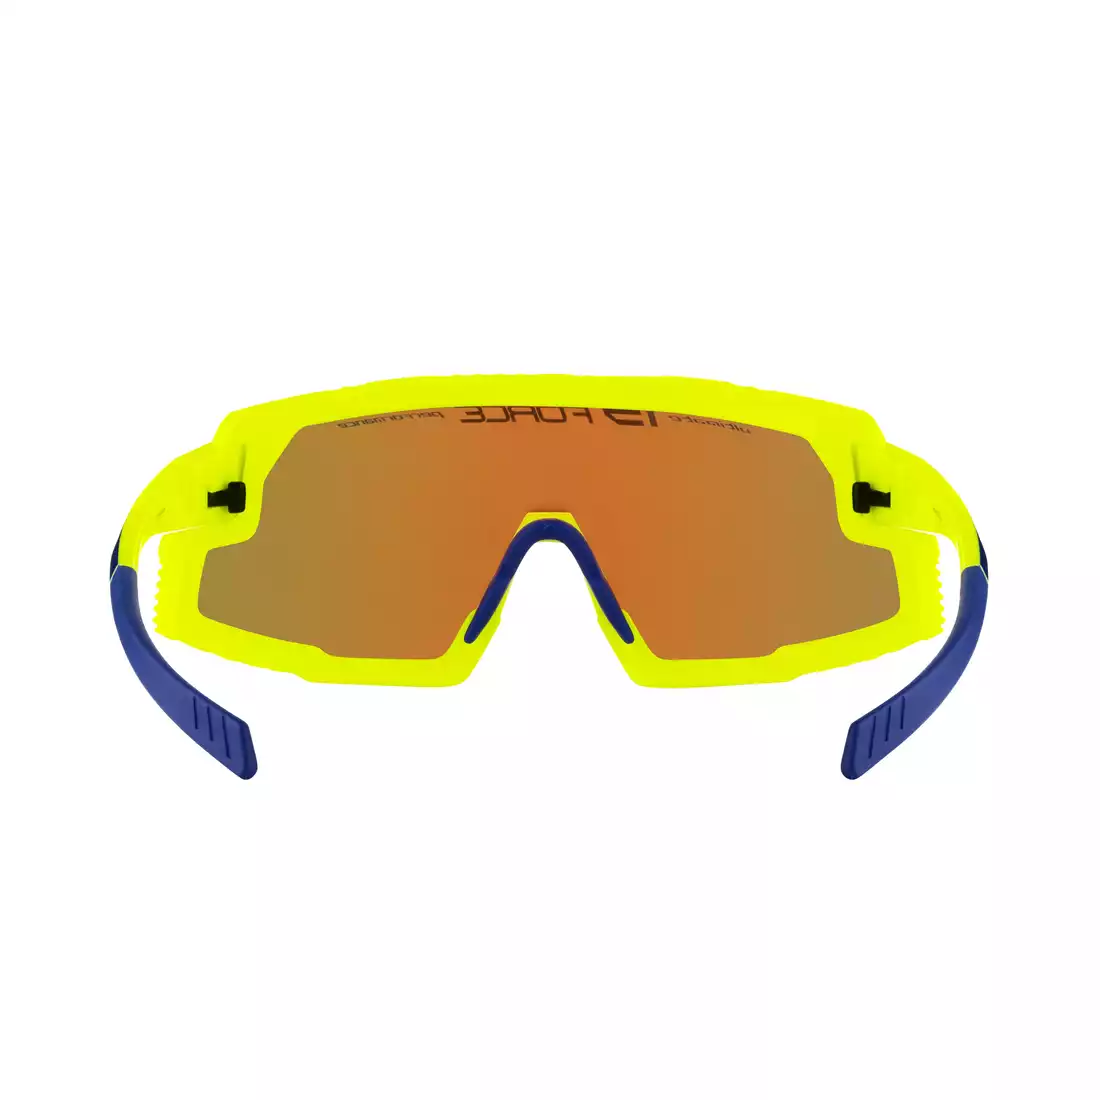 FORCE GRIP Okulary sportowe, niebieskie szkła REVO, fluo 